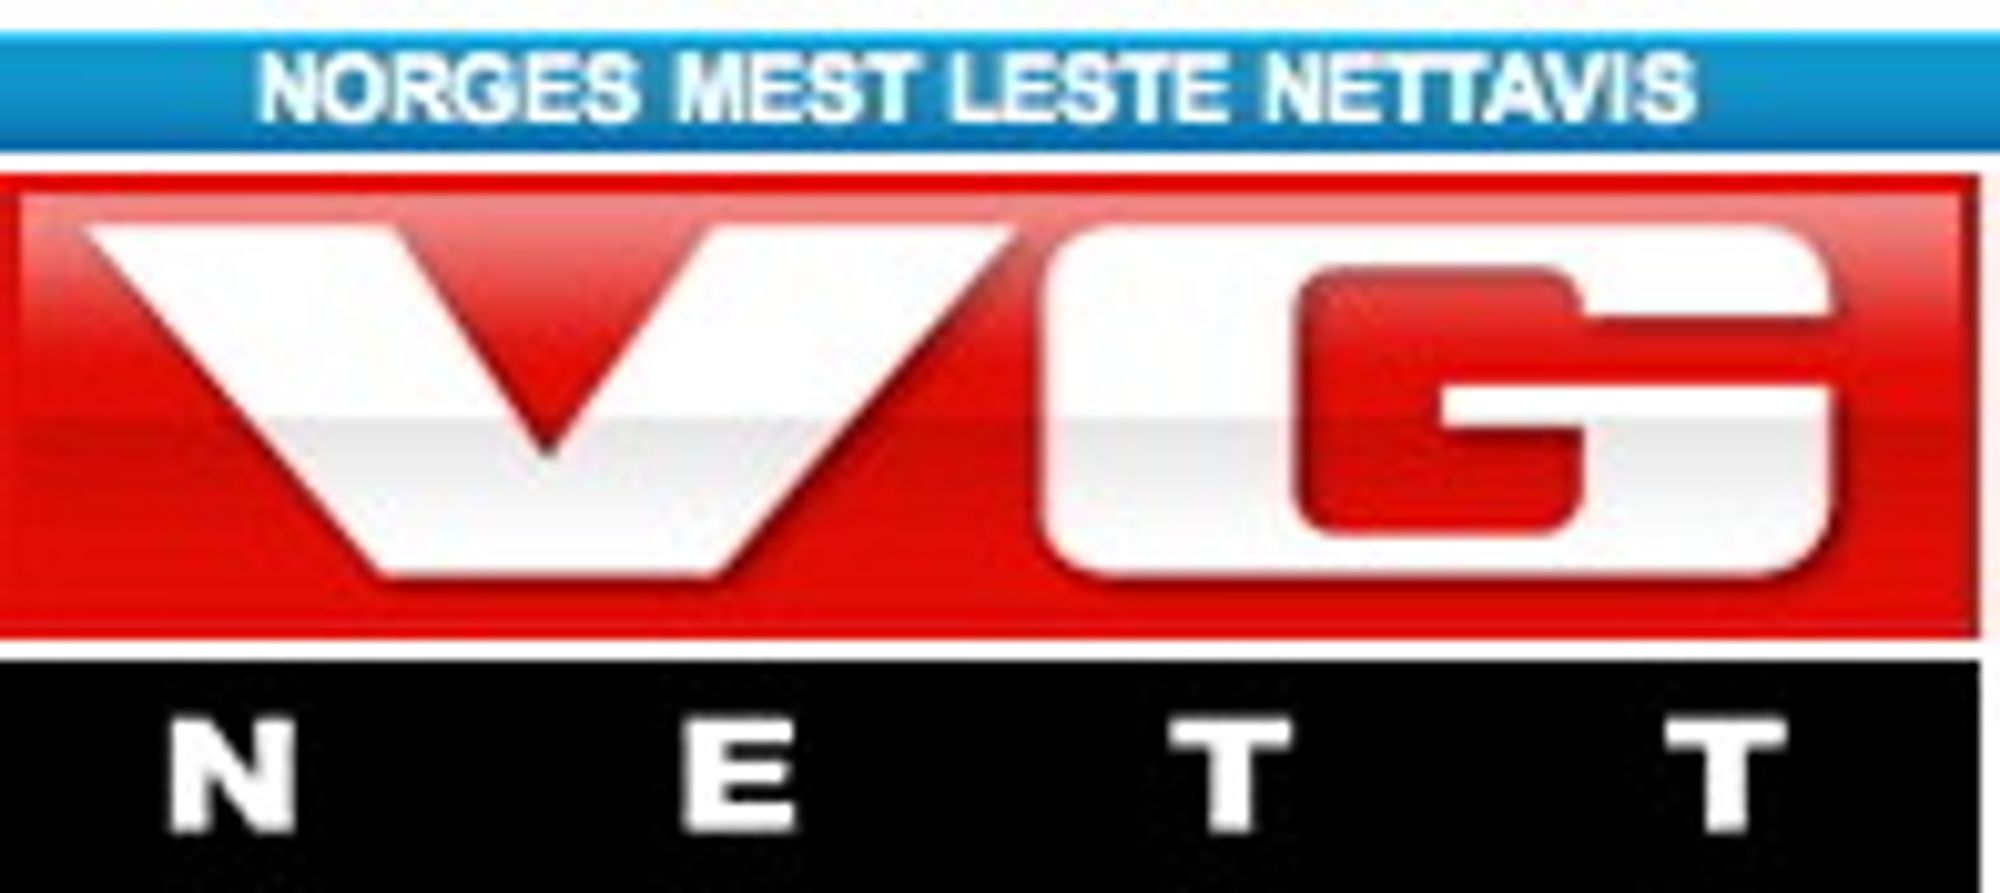 NUMMER 5: VG Nett er landets største nettavis, men bare det femte største nettstedet i Norge, ifølge alexa.com.